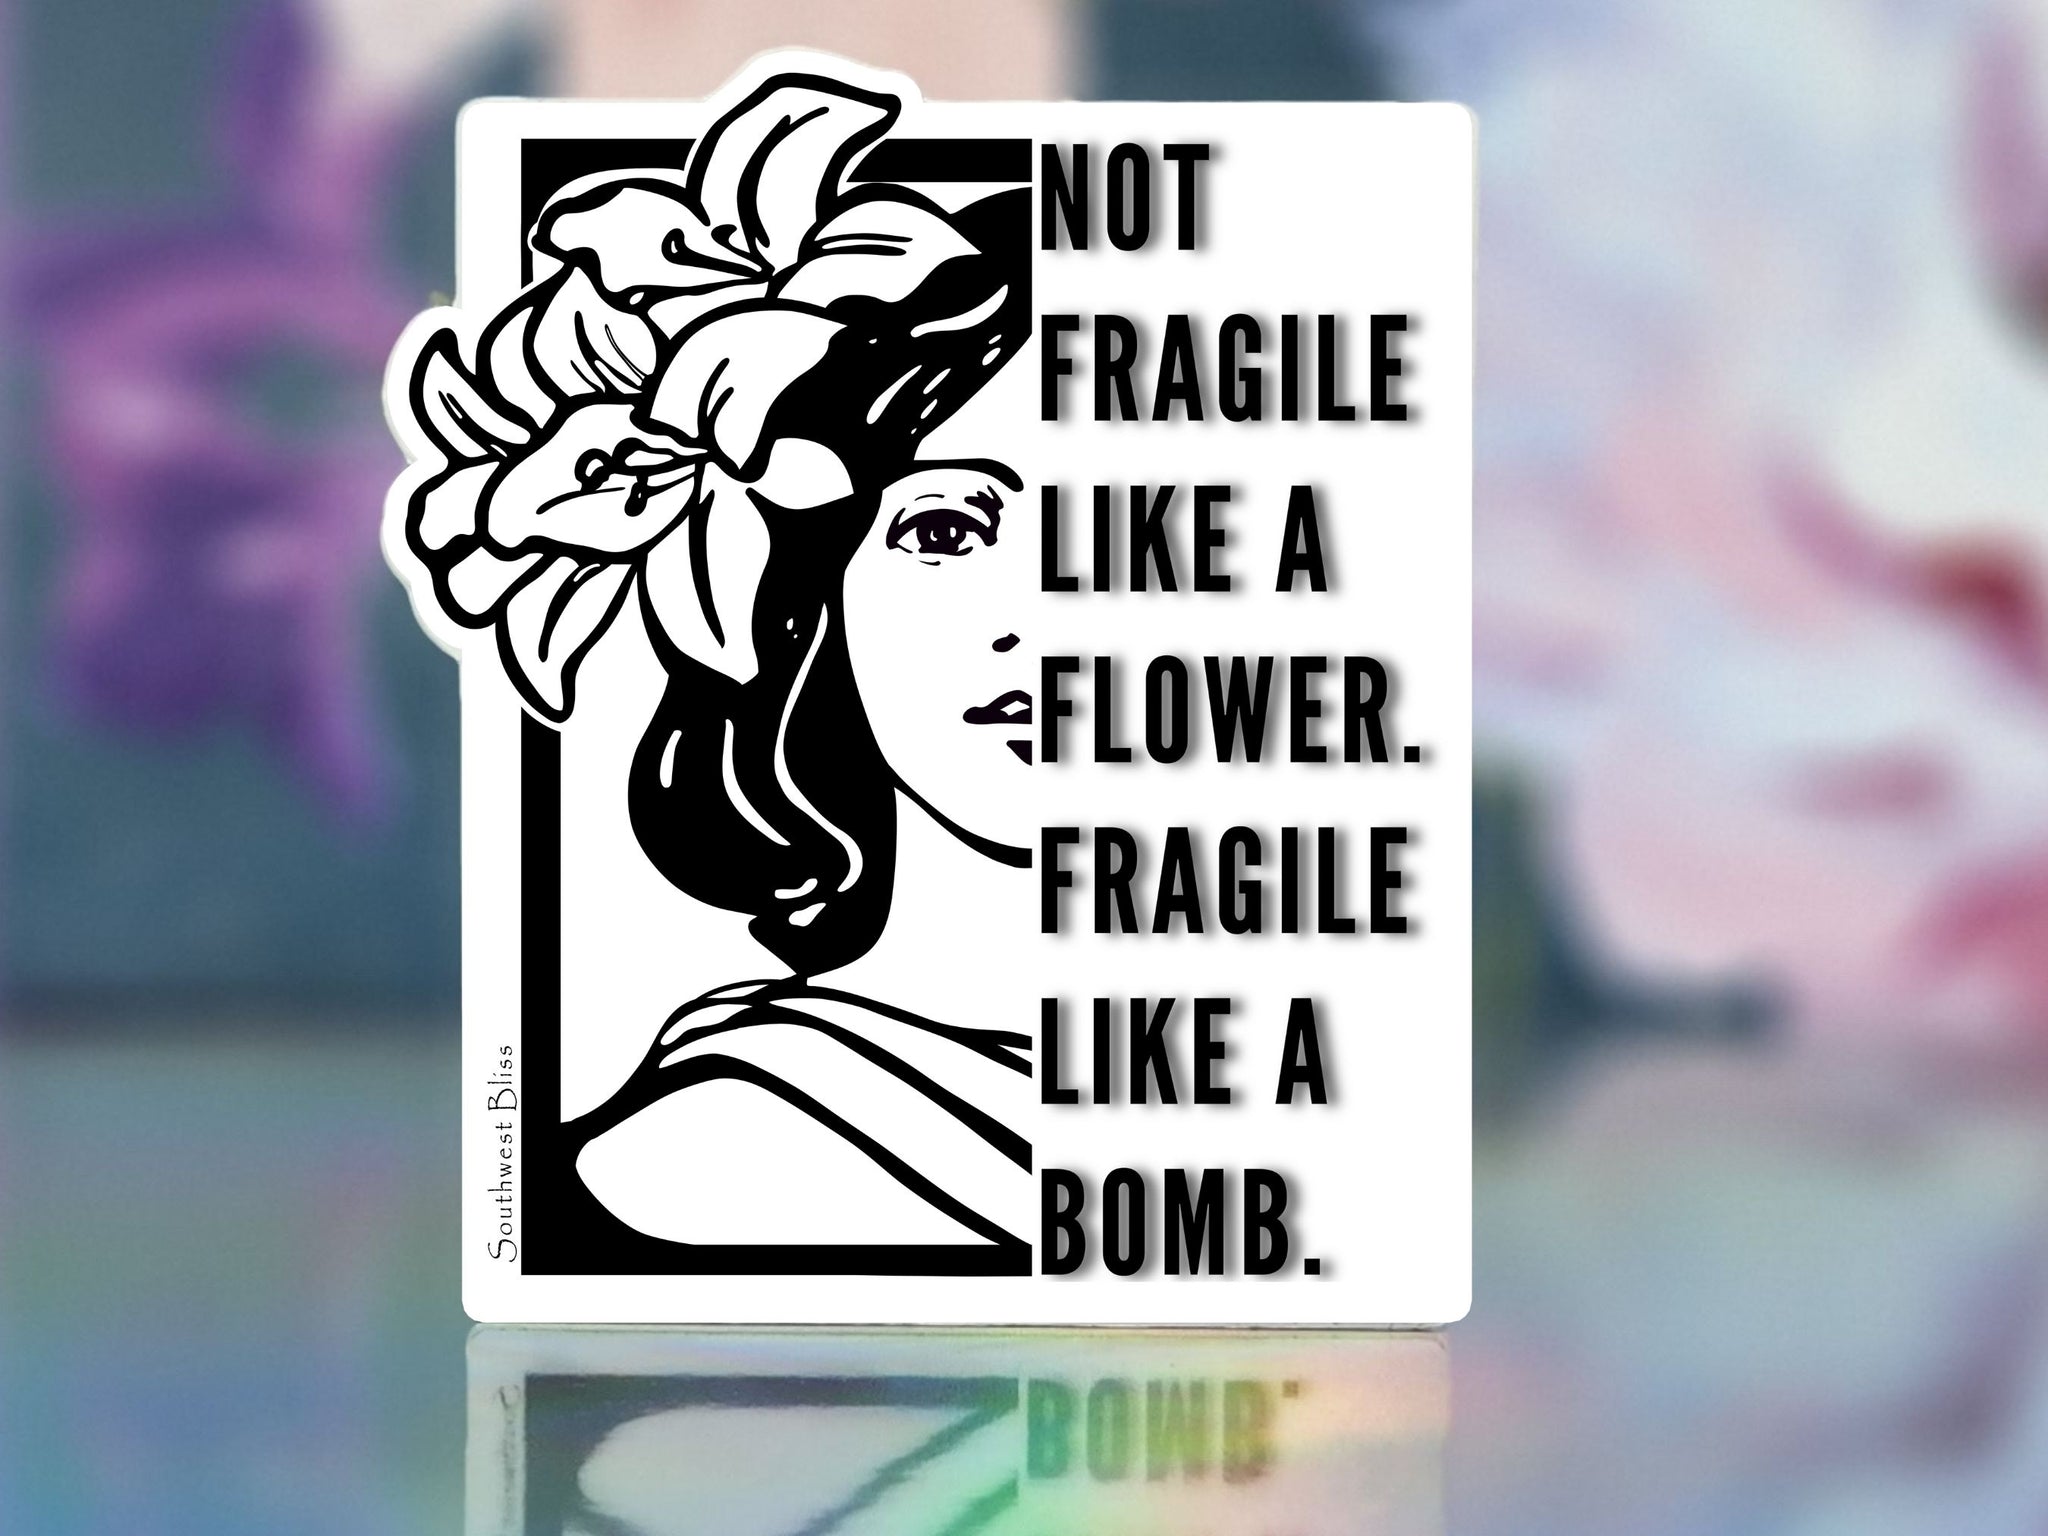 Fragile Like a Bomb